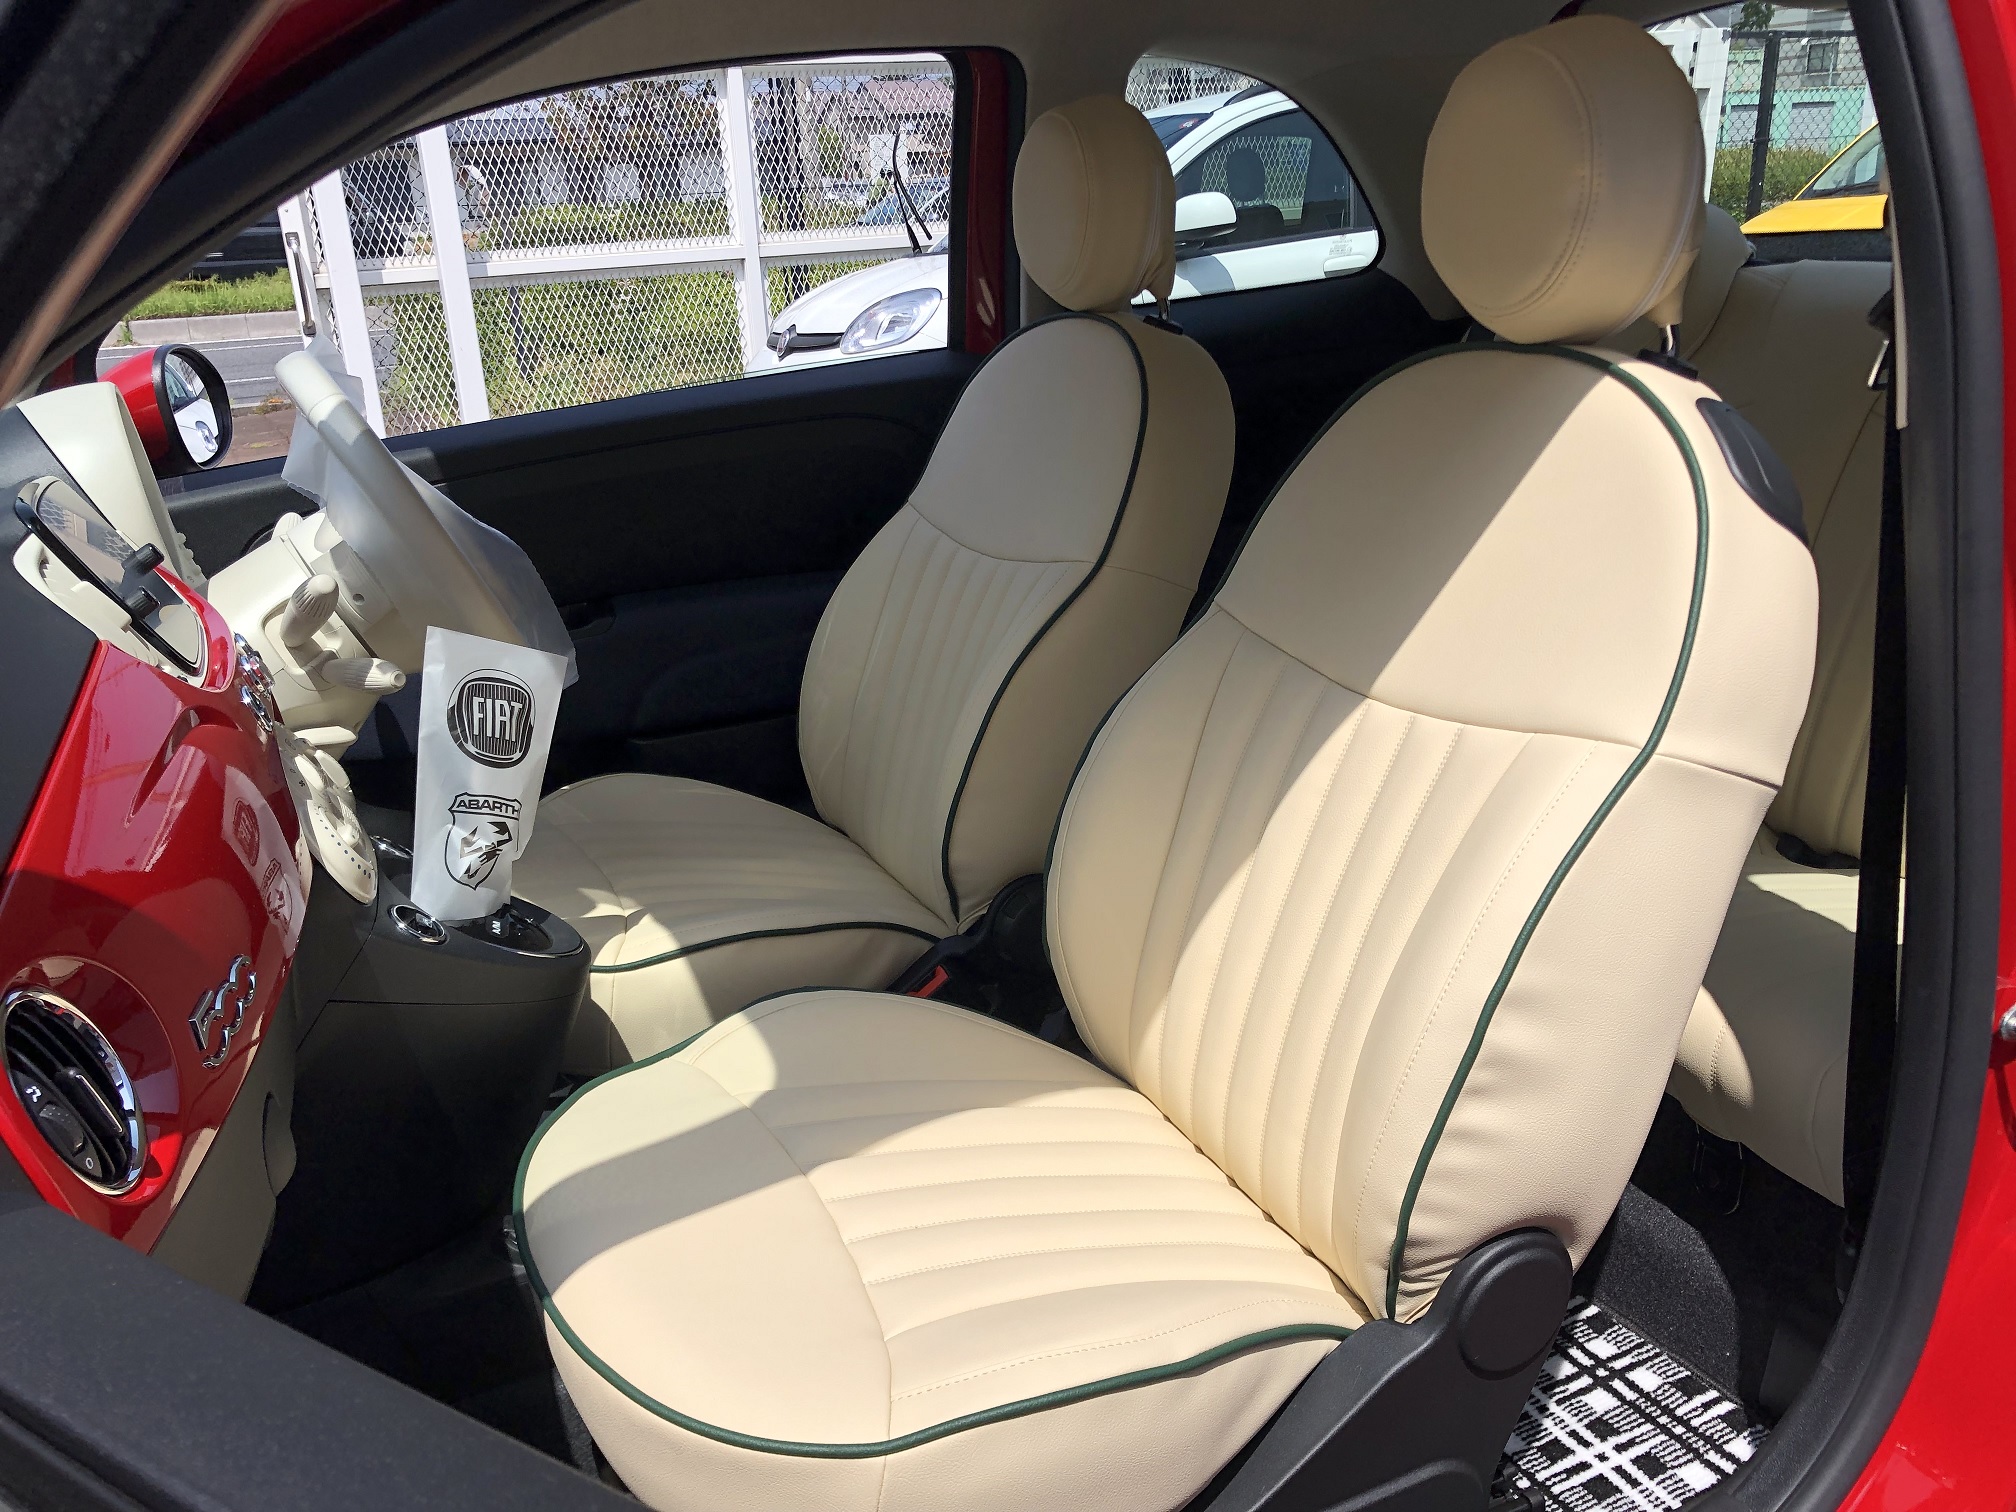 サローネ(Salone) カスタム(custom) シートカバー(seatcover) スタンダード・シート PVC leather 白(ivory) 500／500C／500S CABANA(カバナ) フィアット(FIAT) カルト(CULT)